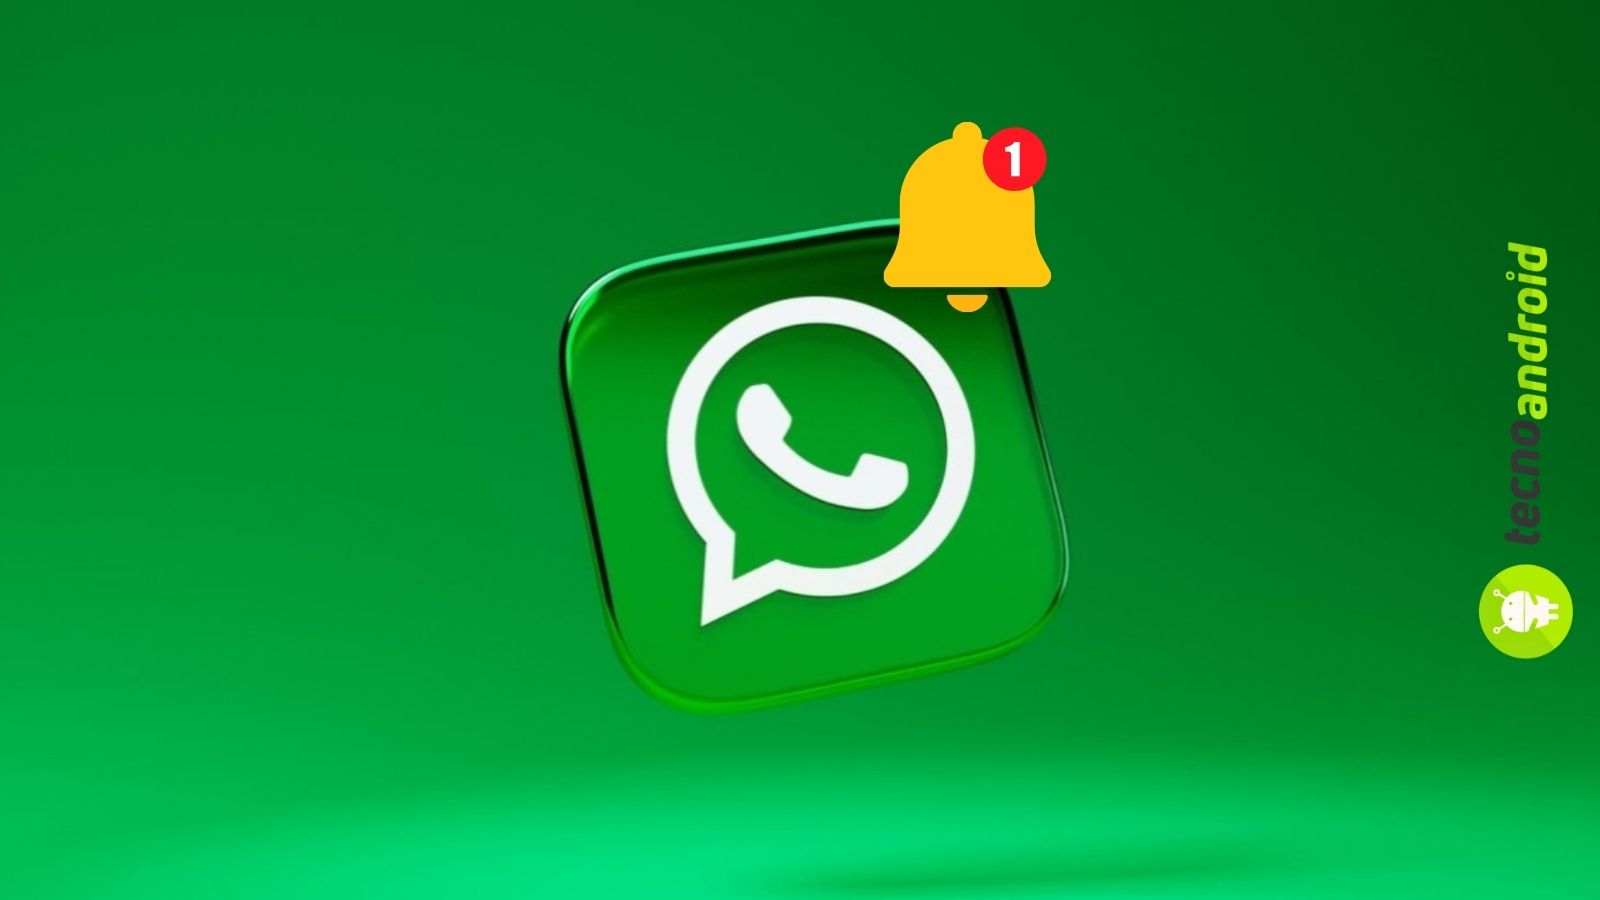 La spunta blu approda su WhatsApp: a cosa serve esattamente?